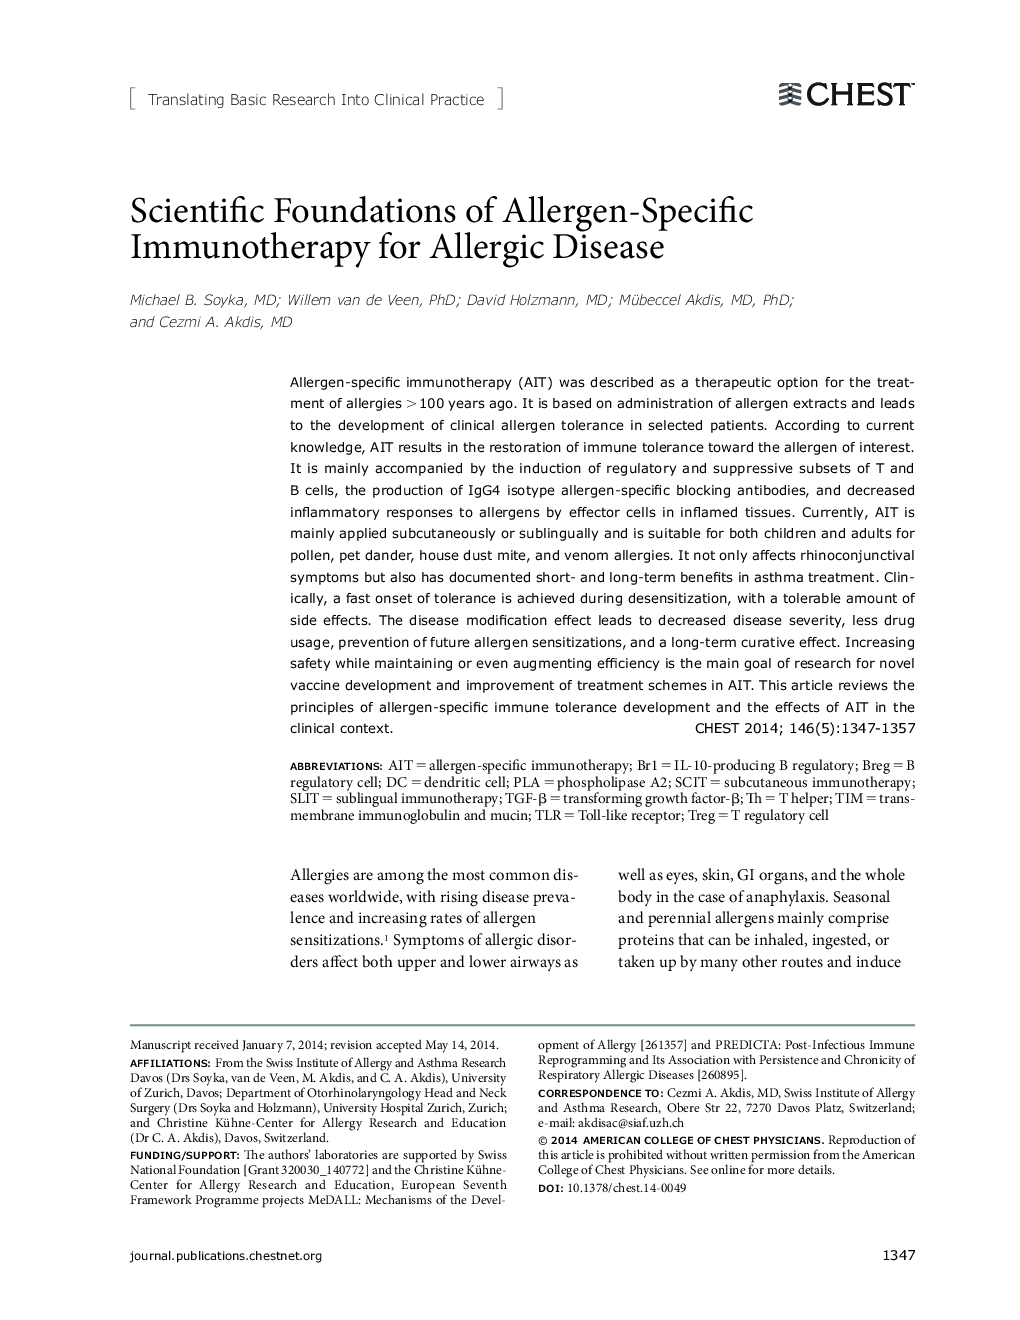 ترجمه تحقیقات اولیه به عمل بالینی پایه های علمی ایمونوتراپی اختصاصی آلرژیک برای بیماری آلرژیک 